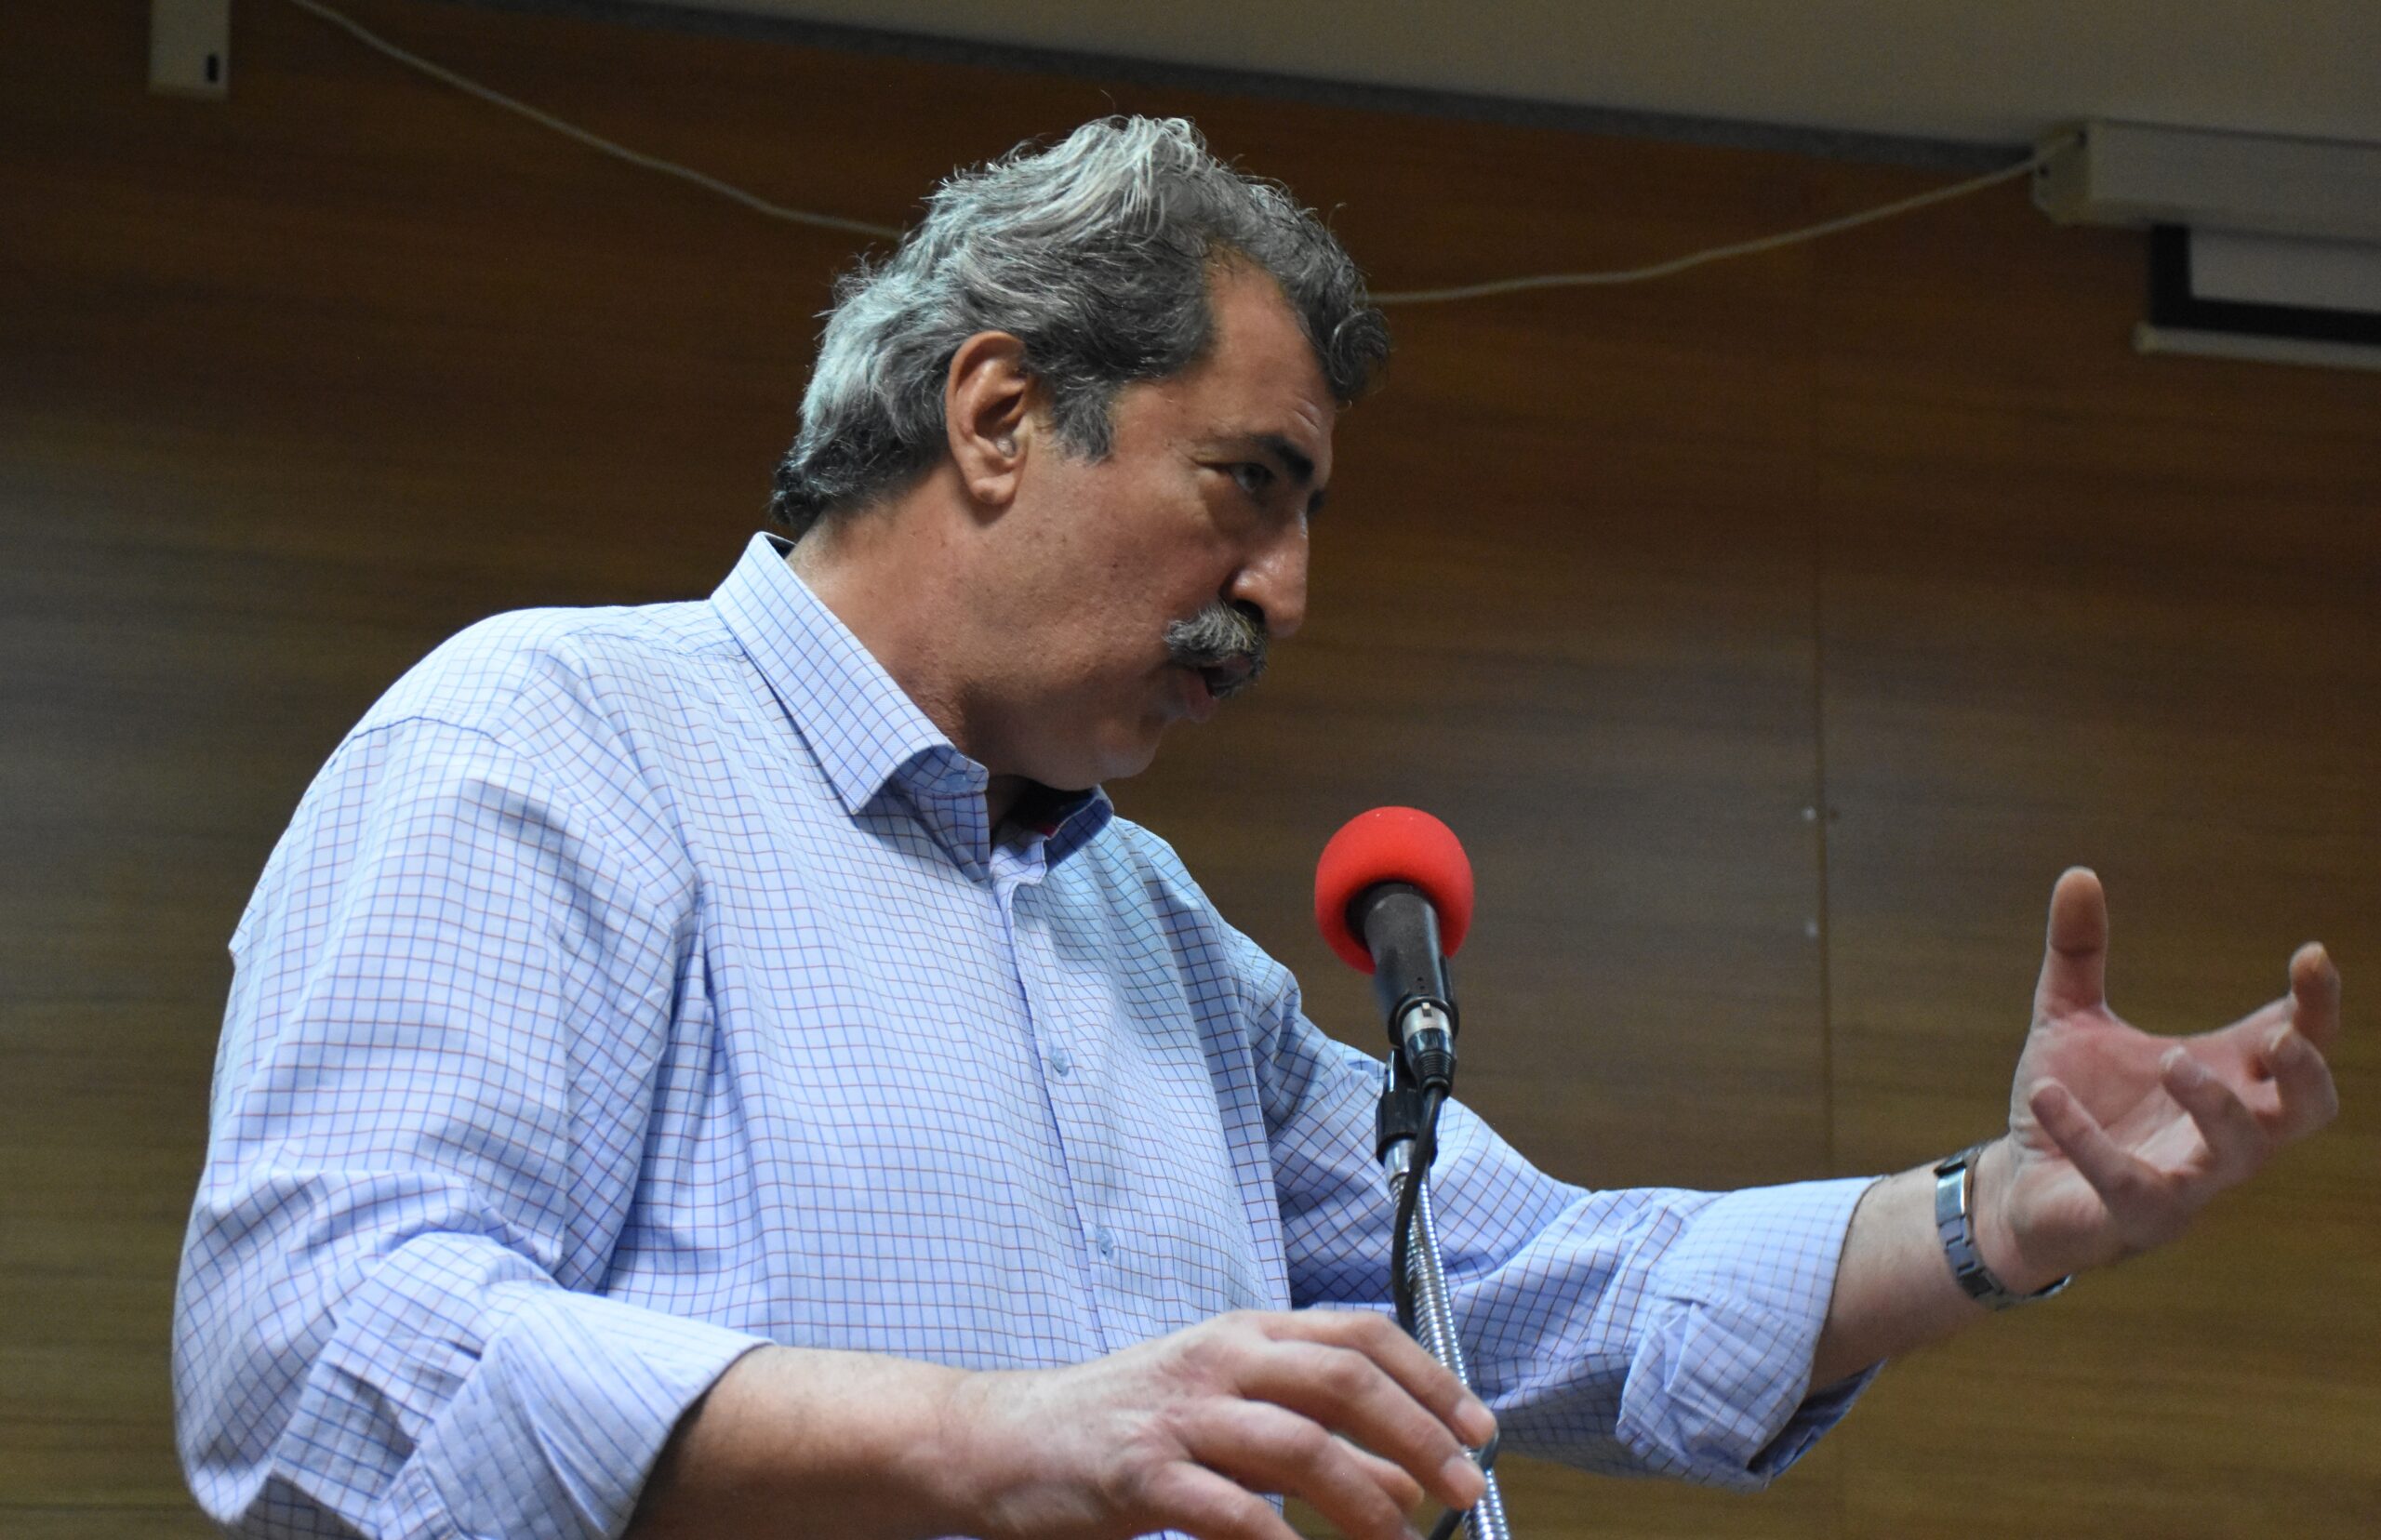 Άναψε φωτιές ο Πολάκης: Την έξοδο του δείχνει ο ΣΥΡΙΖΑ – Πολιτικές και κοινωνικές αντιδράσεις